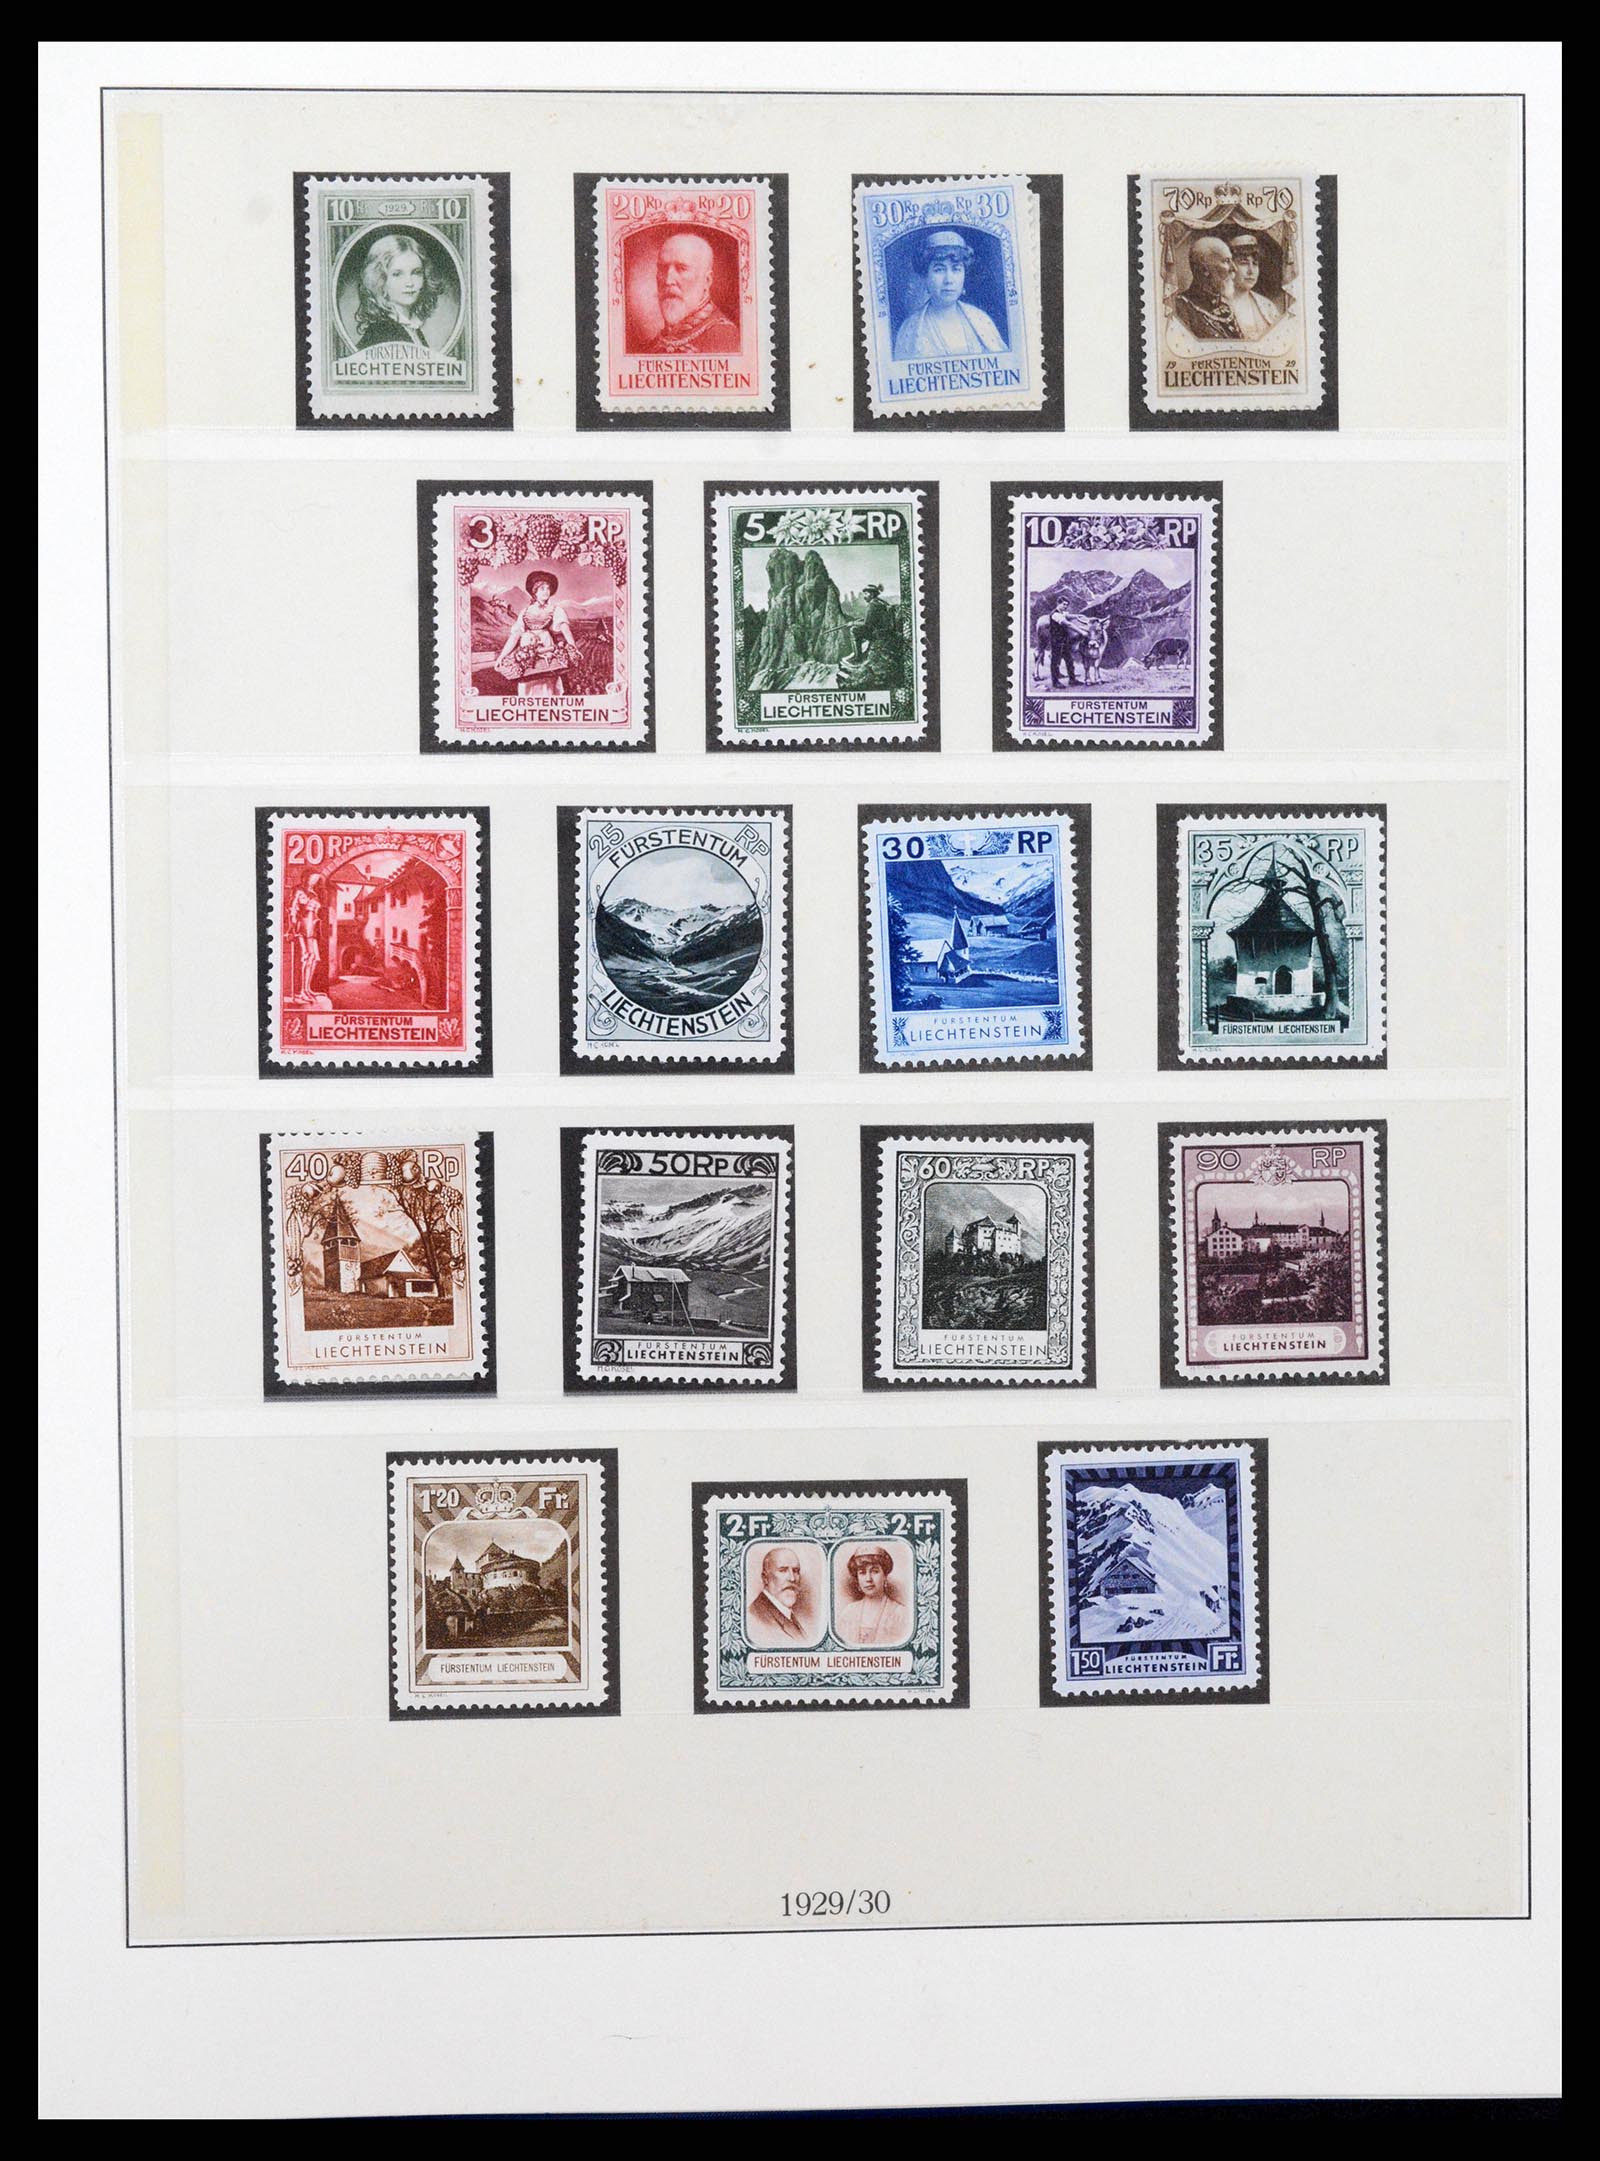 37295 009 - Stamp collection 37295 Liechtenstein 1912-2009.